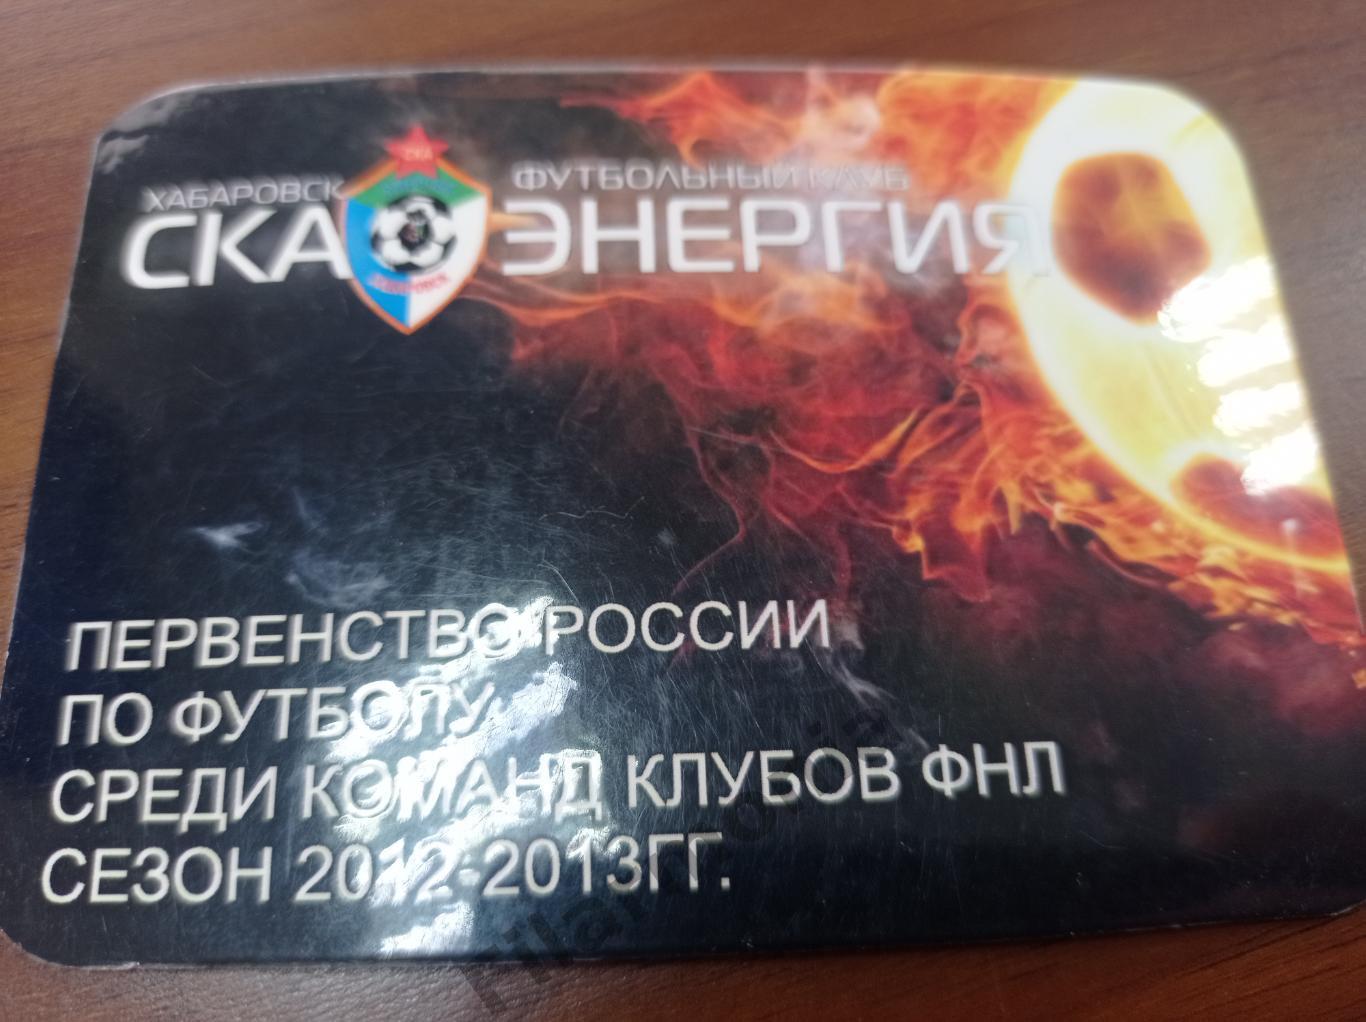 2012-2013 СКА-Энергия Хабаровск календарь игр